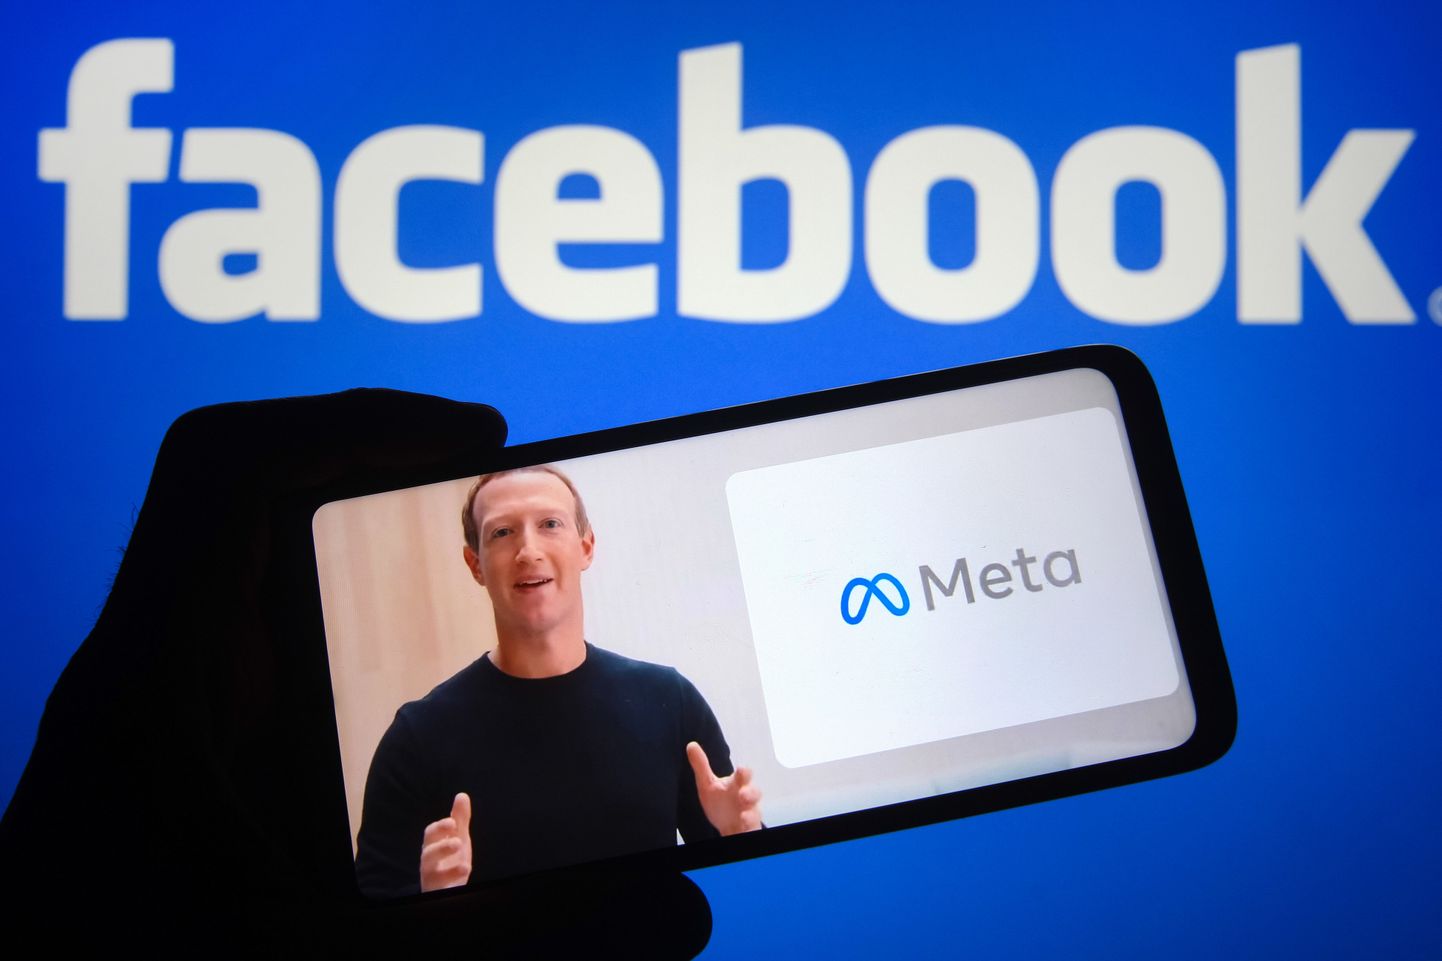 Facebooki tegevjuht Mark Zuckerberg teatas 28. oktoobril, et Facebook Inc saab uueks nimeks Meta ja ka uue logo